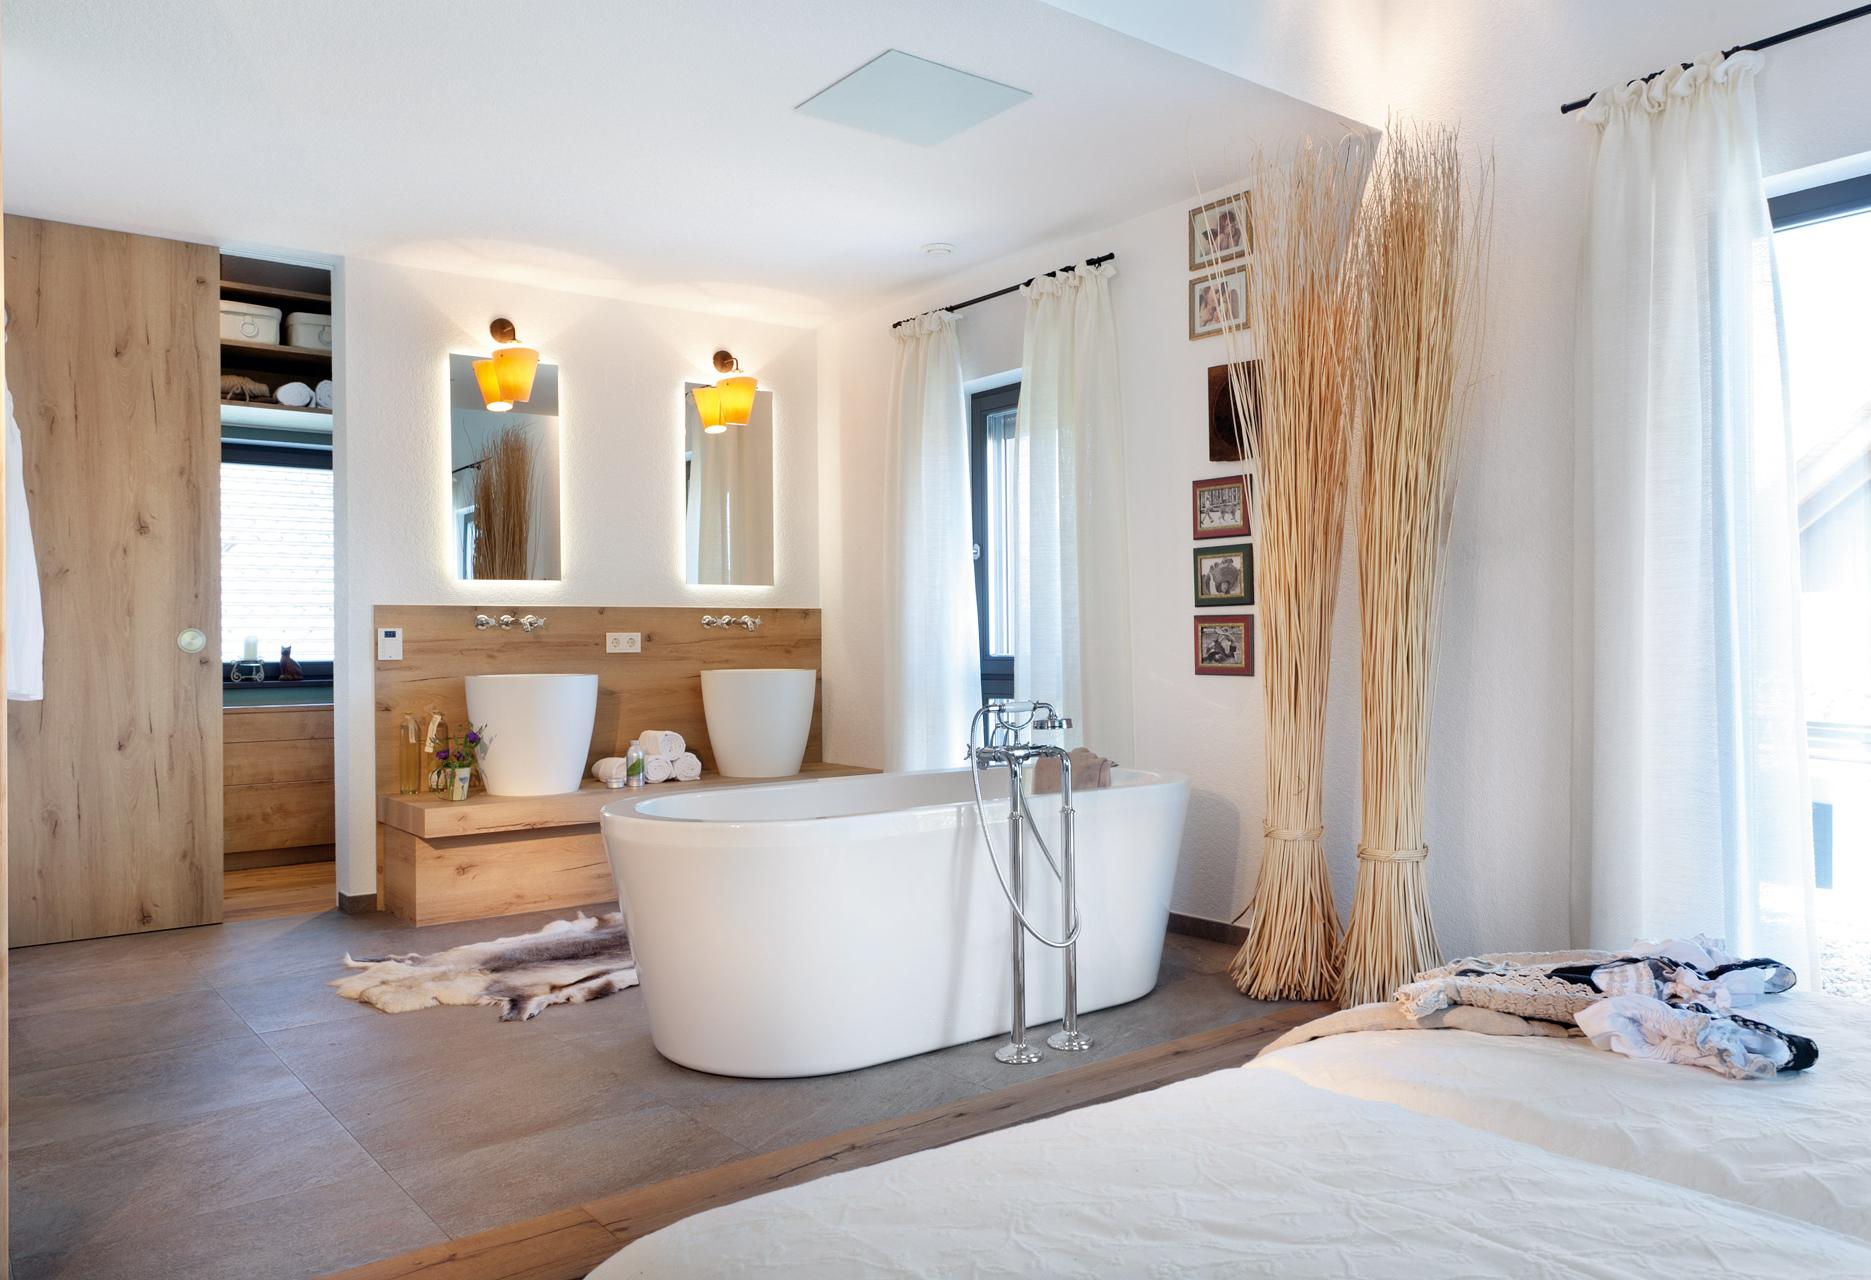 Salle de bain ouverte dans la chambre à coucher dans le style campagnard